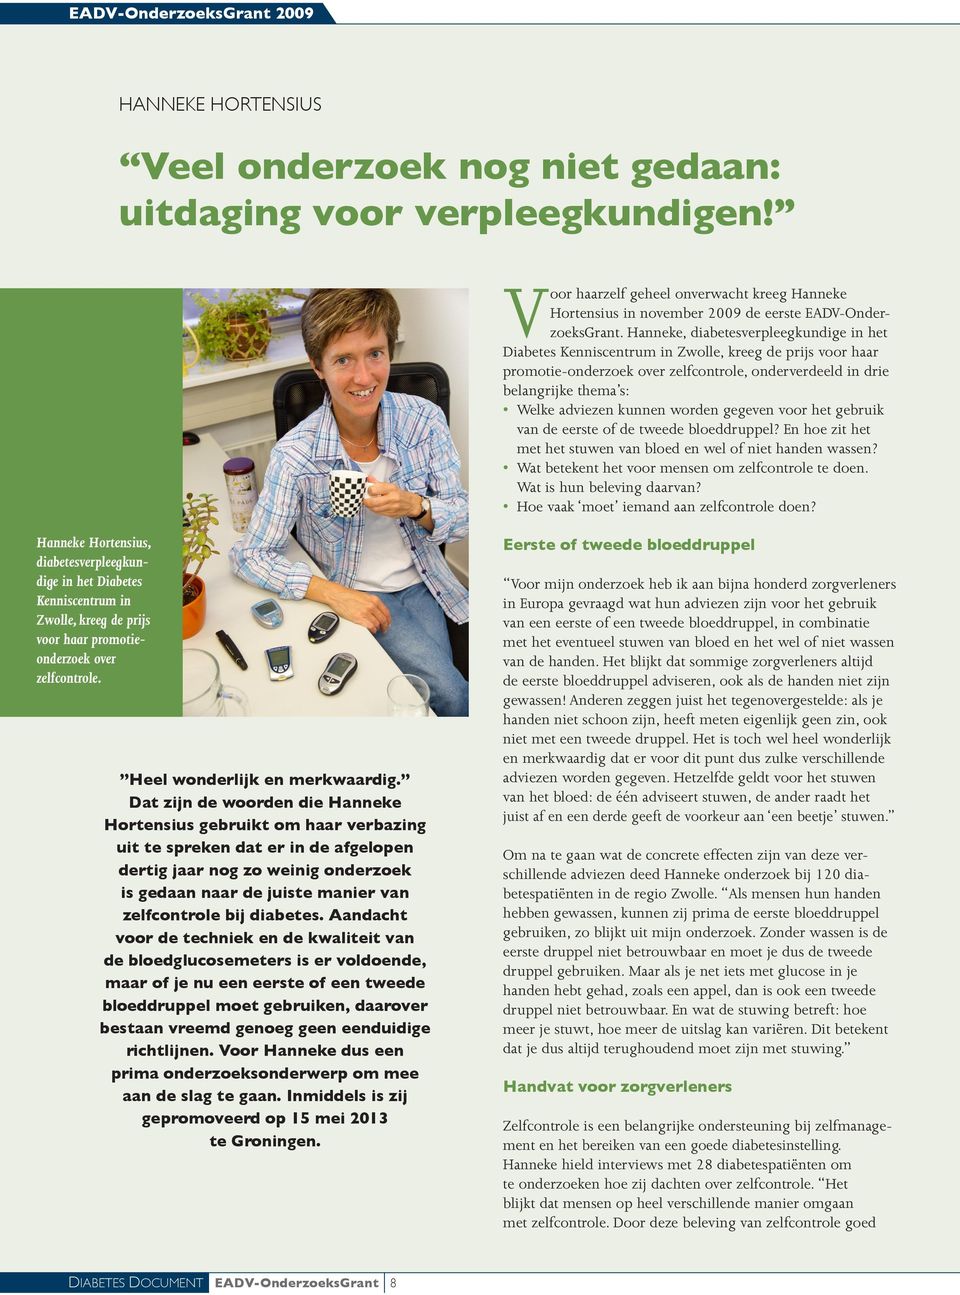 Hanneke, diabetesverpleegkundige in het Diabetes Kenniscentrum in Zwolle, kreeg de prijs voor haar promotie-onderzoek over zelfcontrole, onderverdeeld in drie belangrijke thema s: Welke adviezen